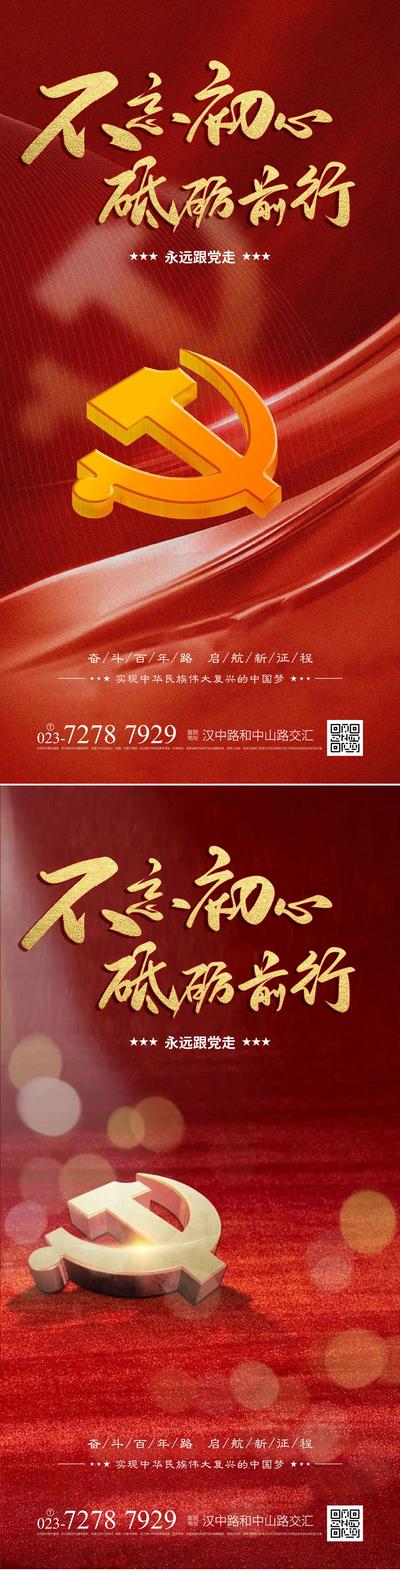 【南门网】广告 海报 节日 建党节 71 党徽 系列 品质